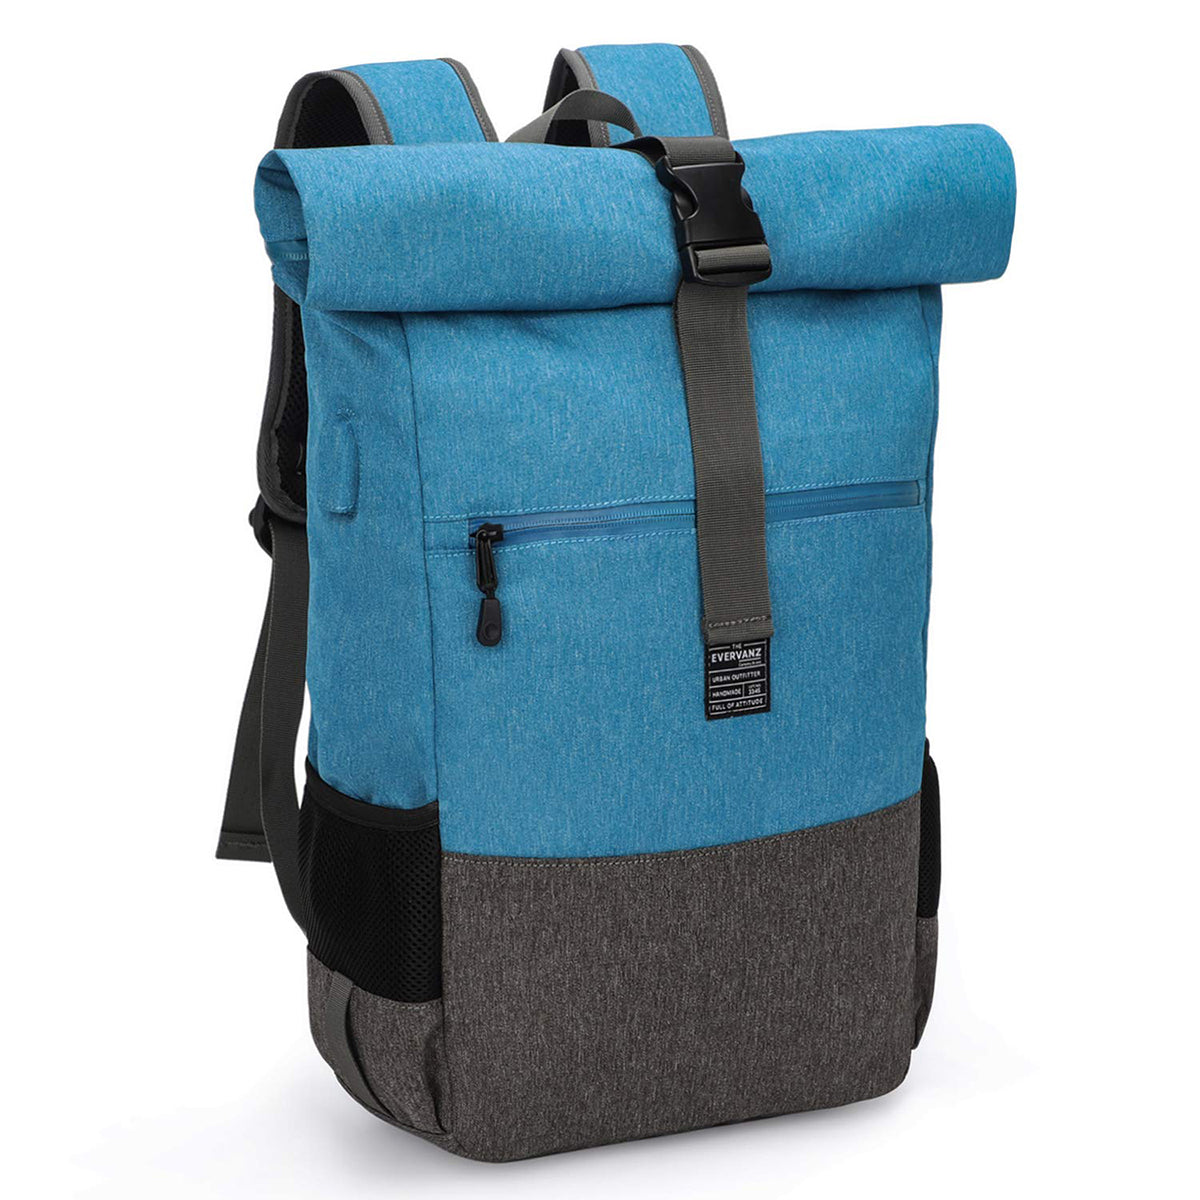 Lightweight Roll Top Backpack